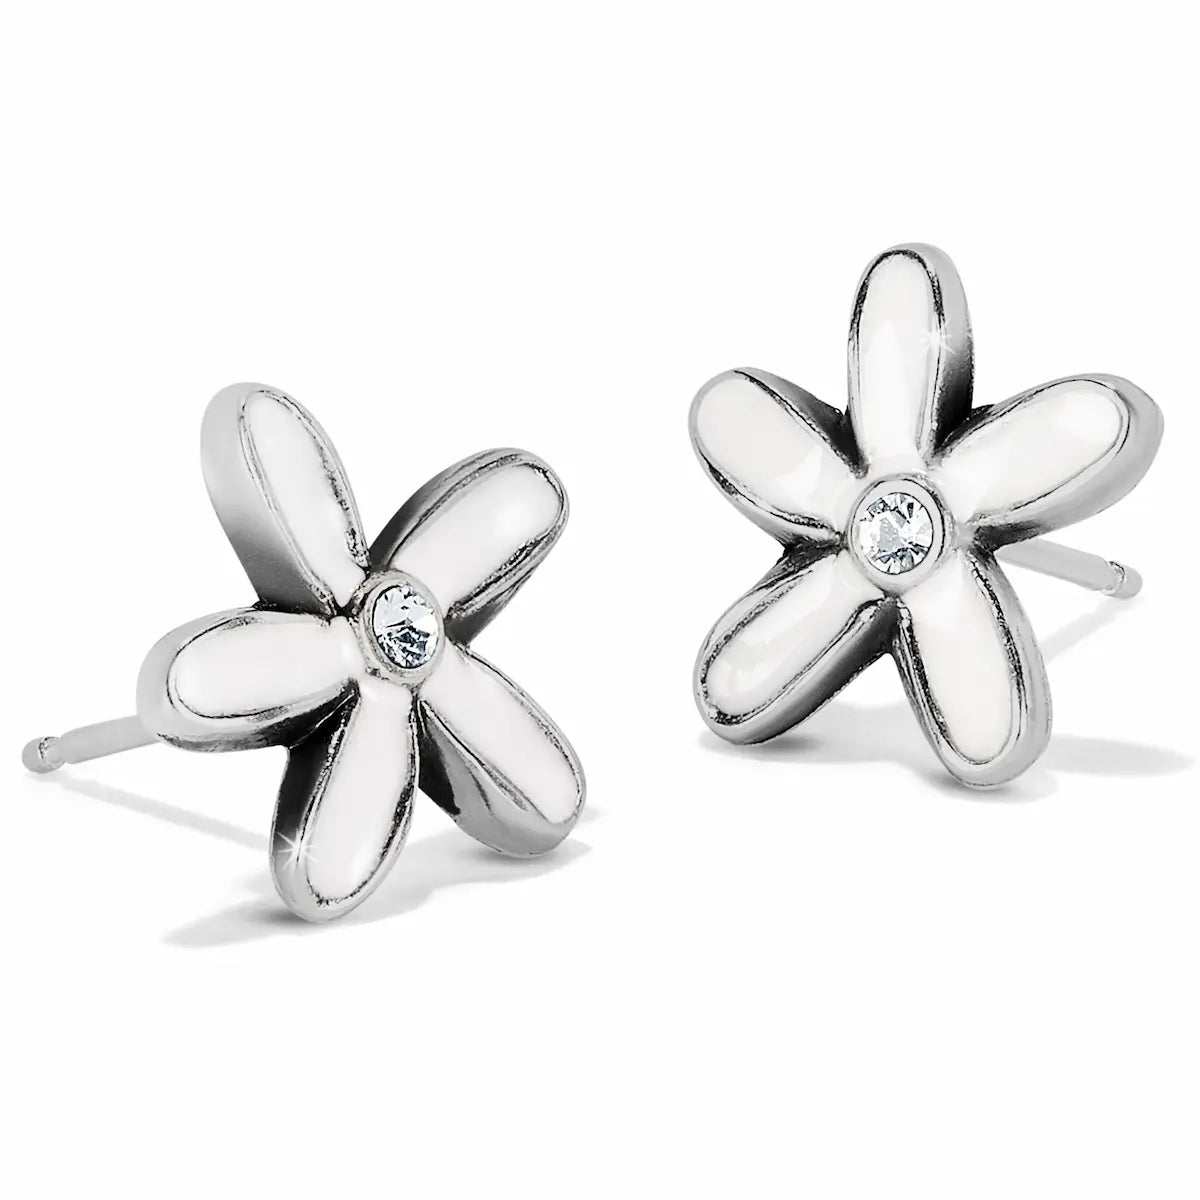 Love Bouquet Mini Post Earrings in silver